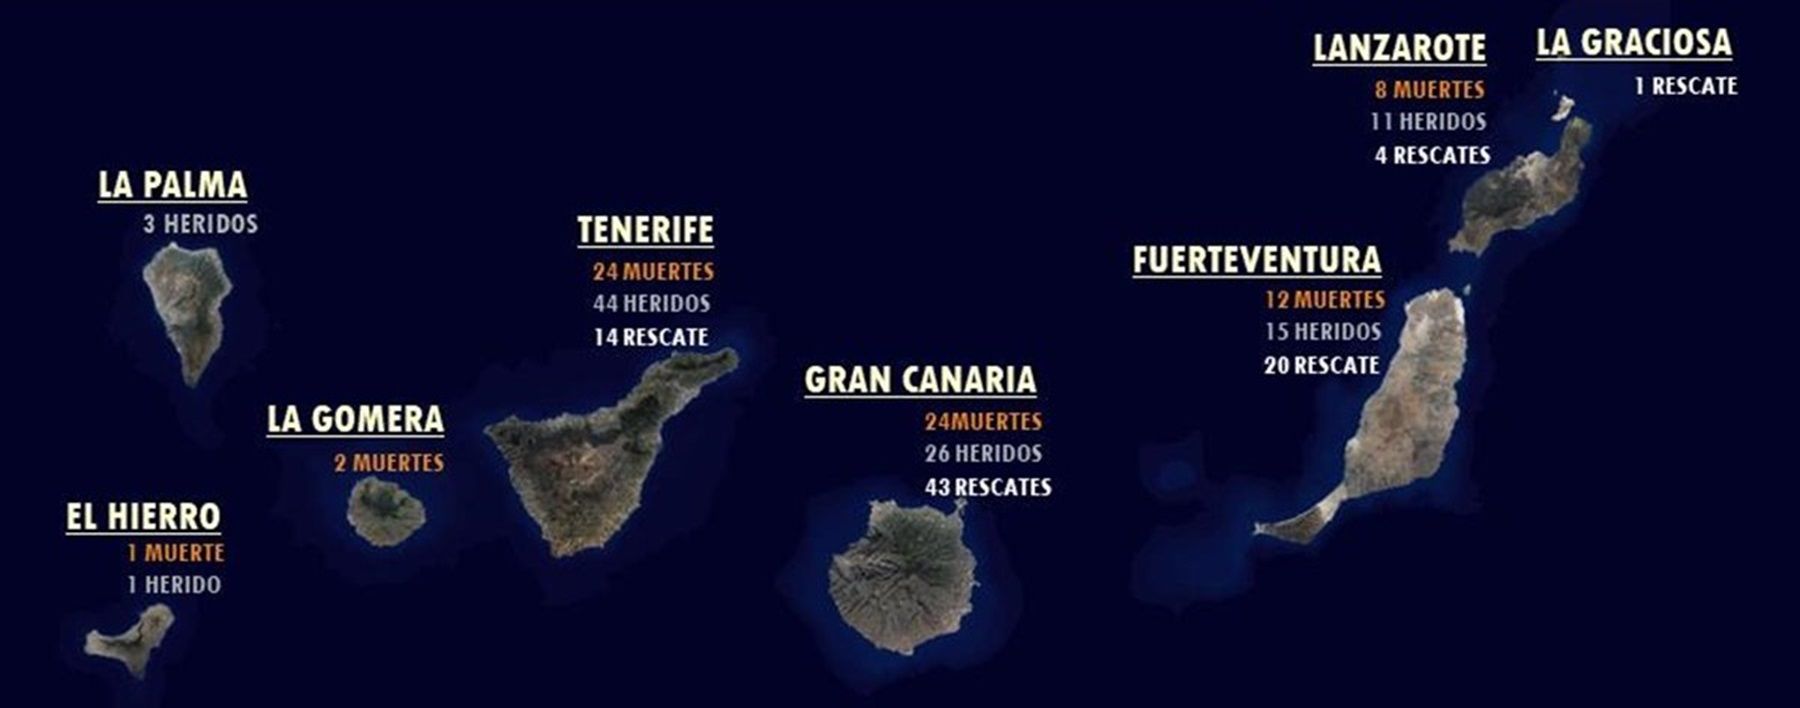 Mapa general del Archipiélago con los datos de Lanzarote